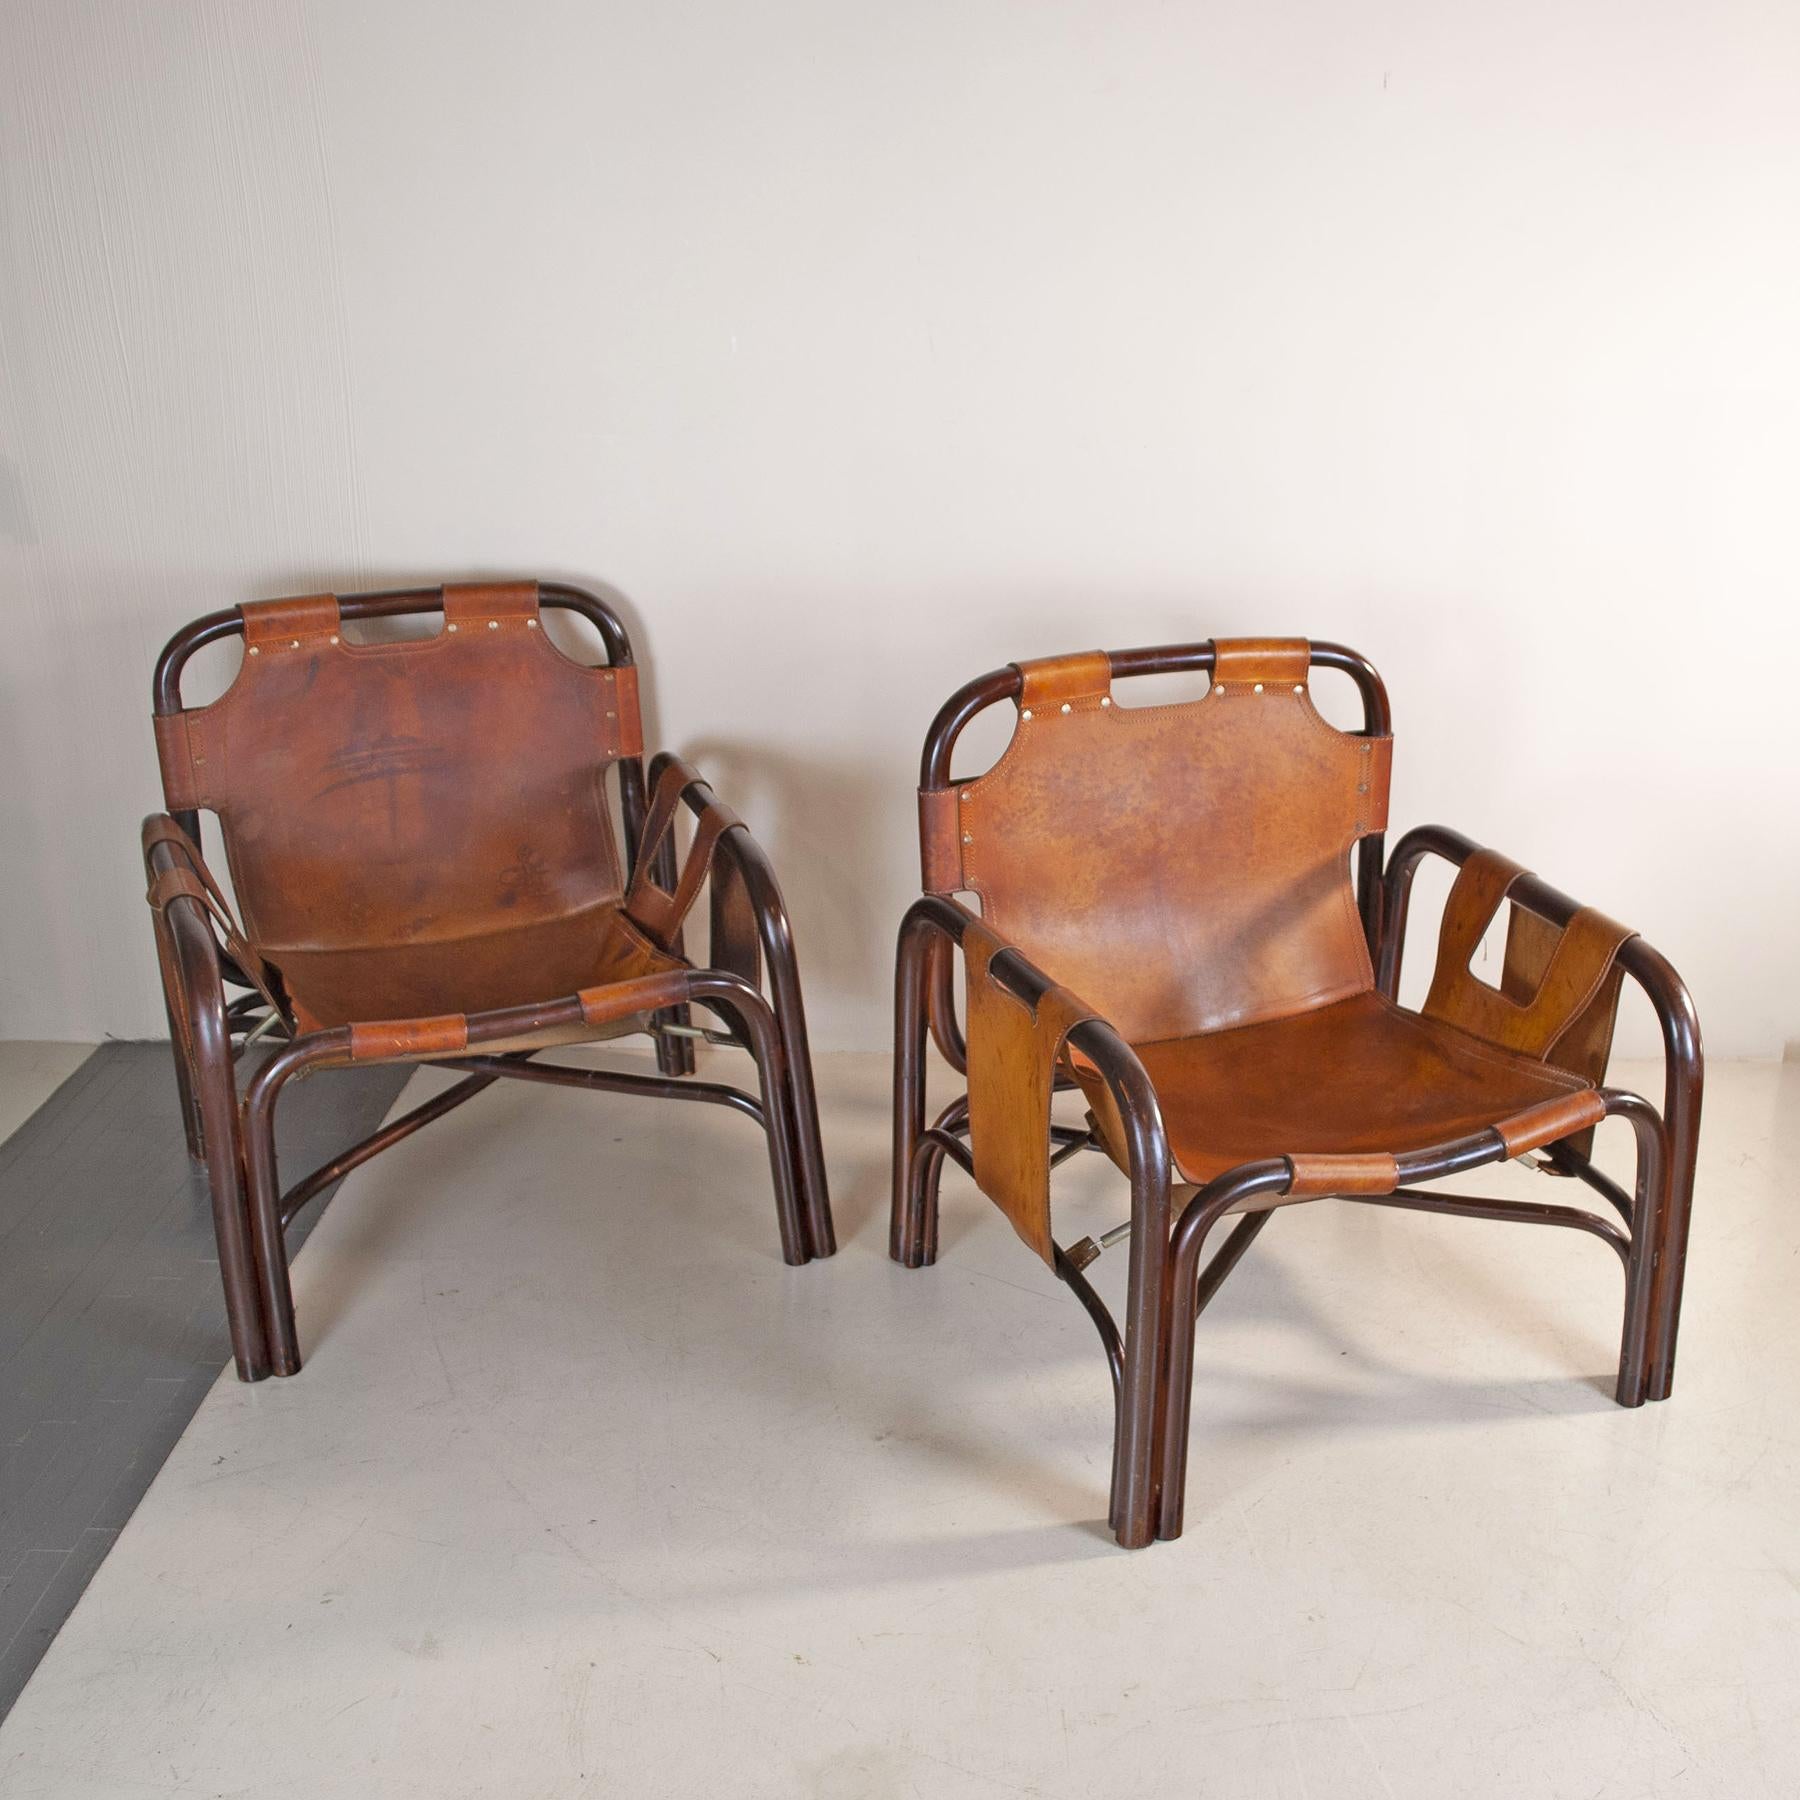 Ensemble de deux fauteuils conçus par Tito Agnoli pour Bonacina à la fin des années 1960. Structure en bambou et revêtement en cuir naturel de couleur cognac. Quelques taches sur le cuir